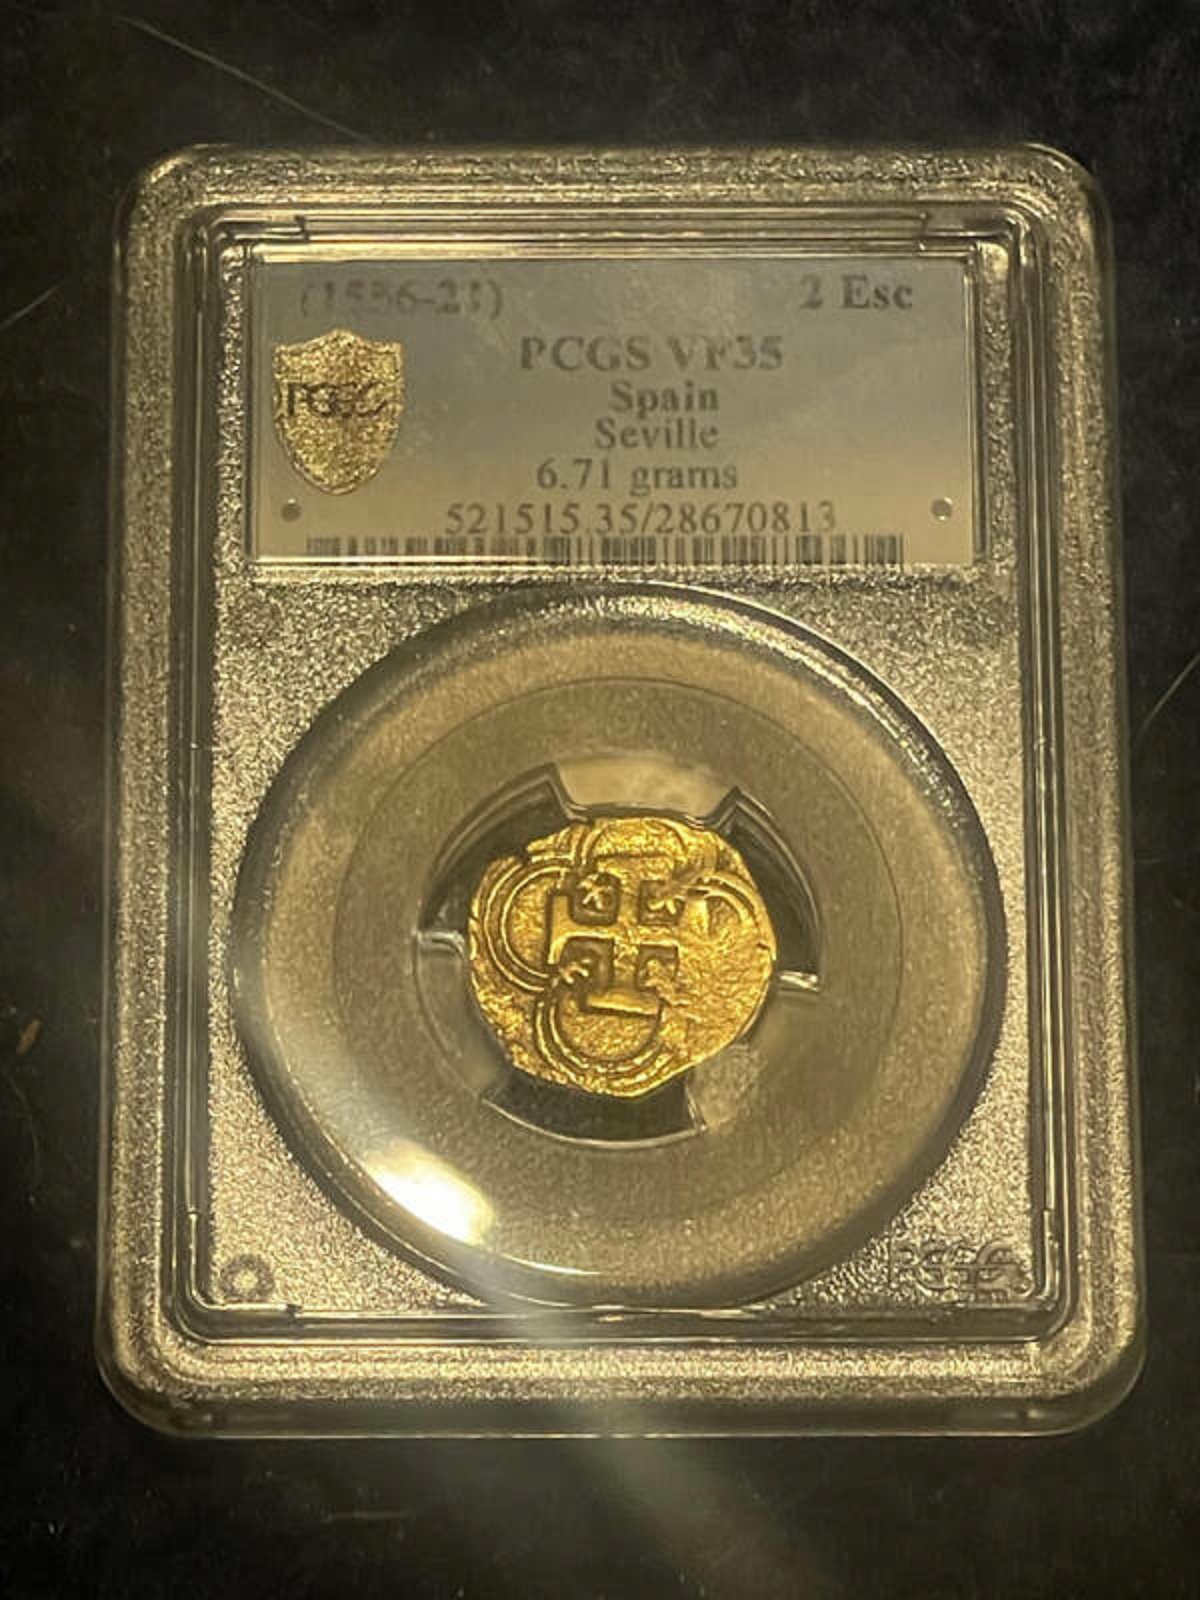 gold - 155621 Pcgs VF35 Spain Seville 6.71 grams 1515 3528670813 Esc